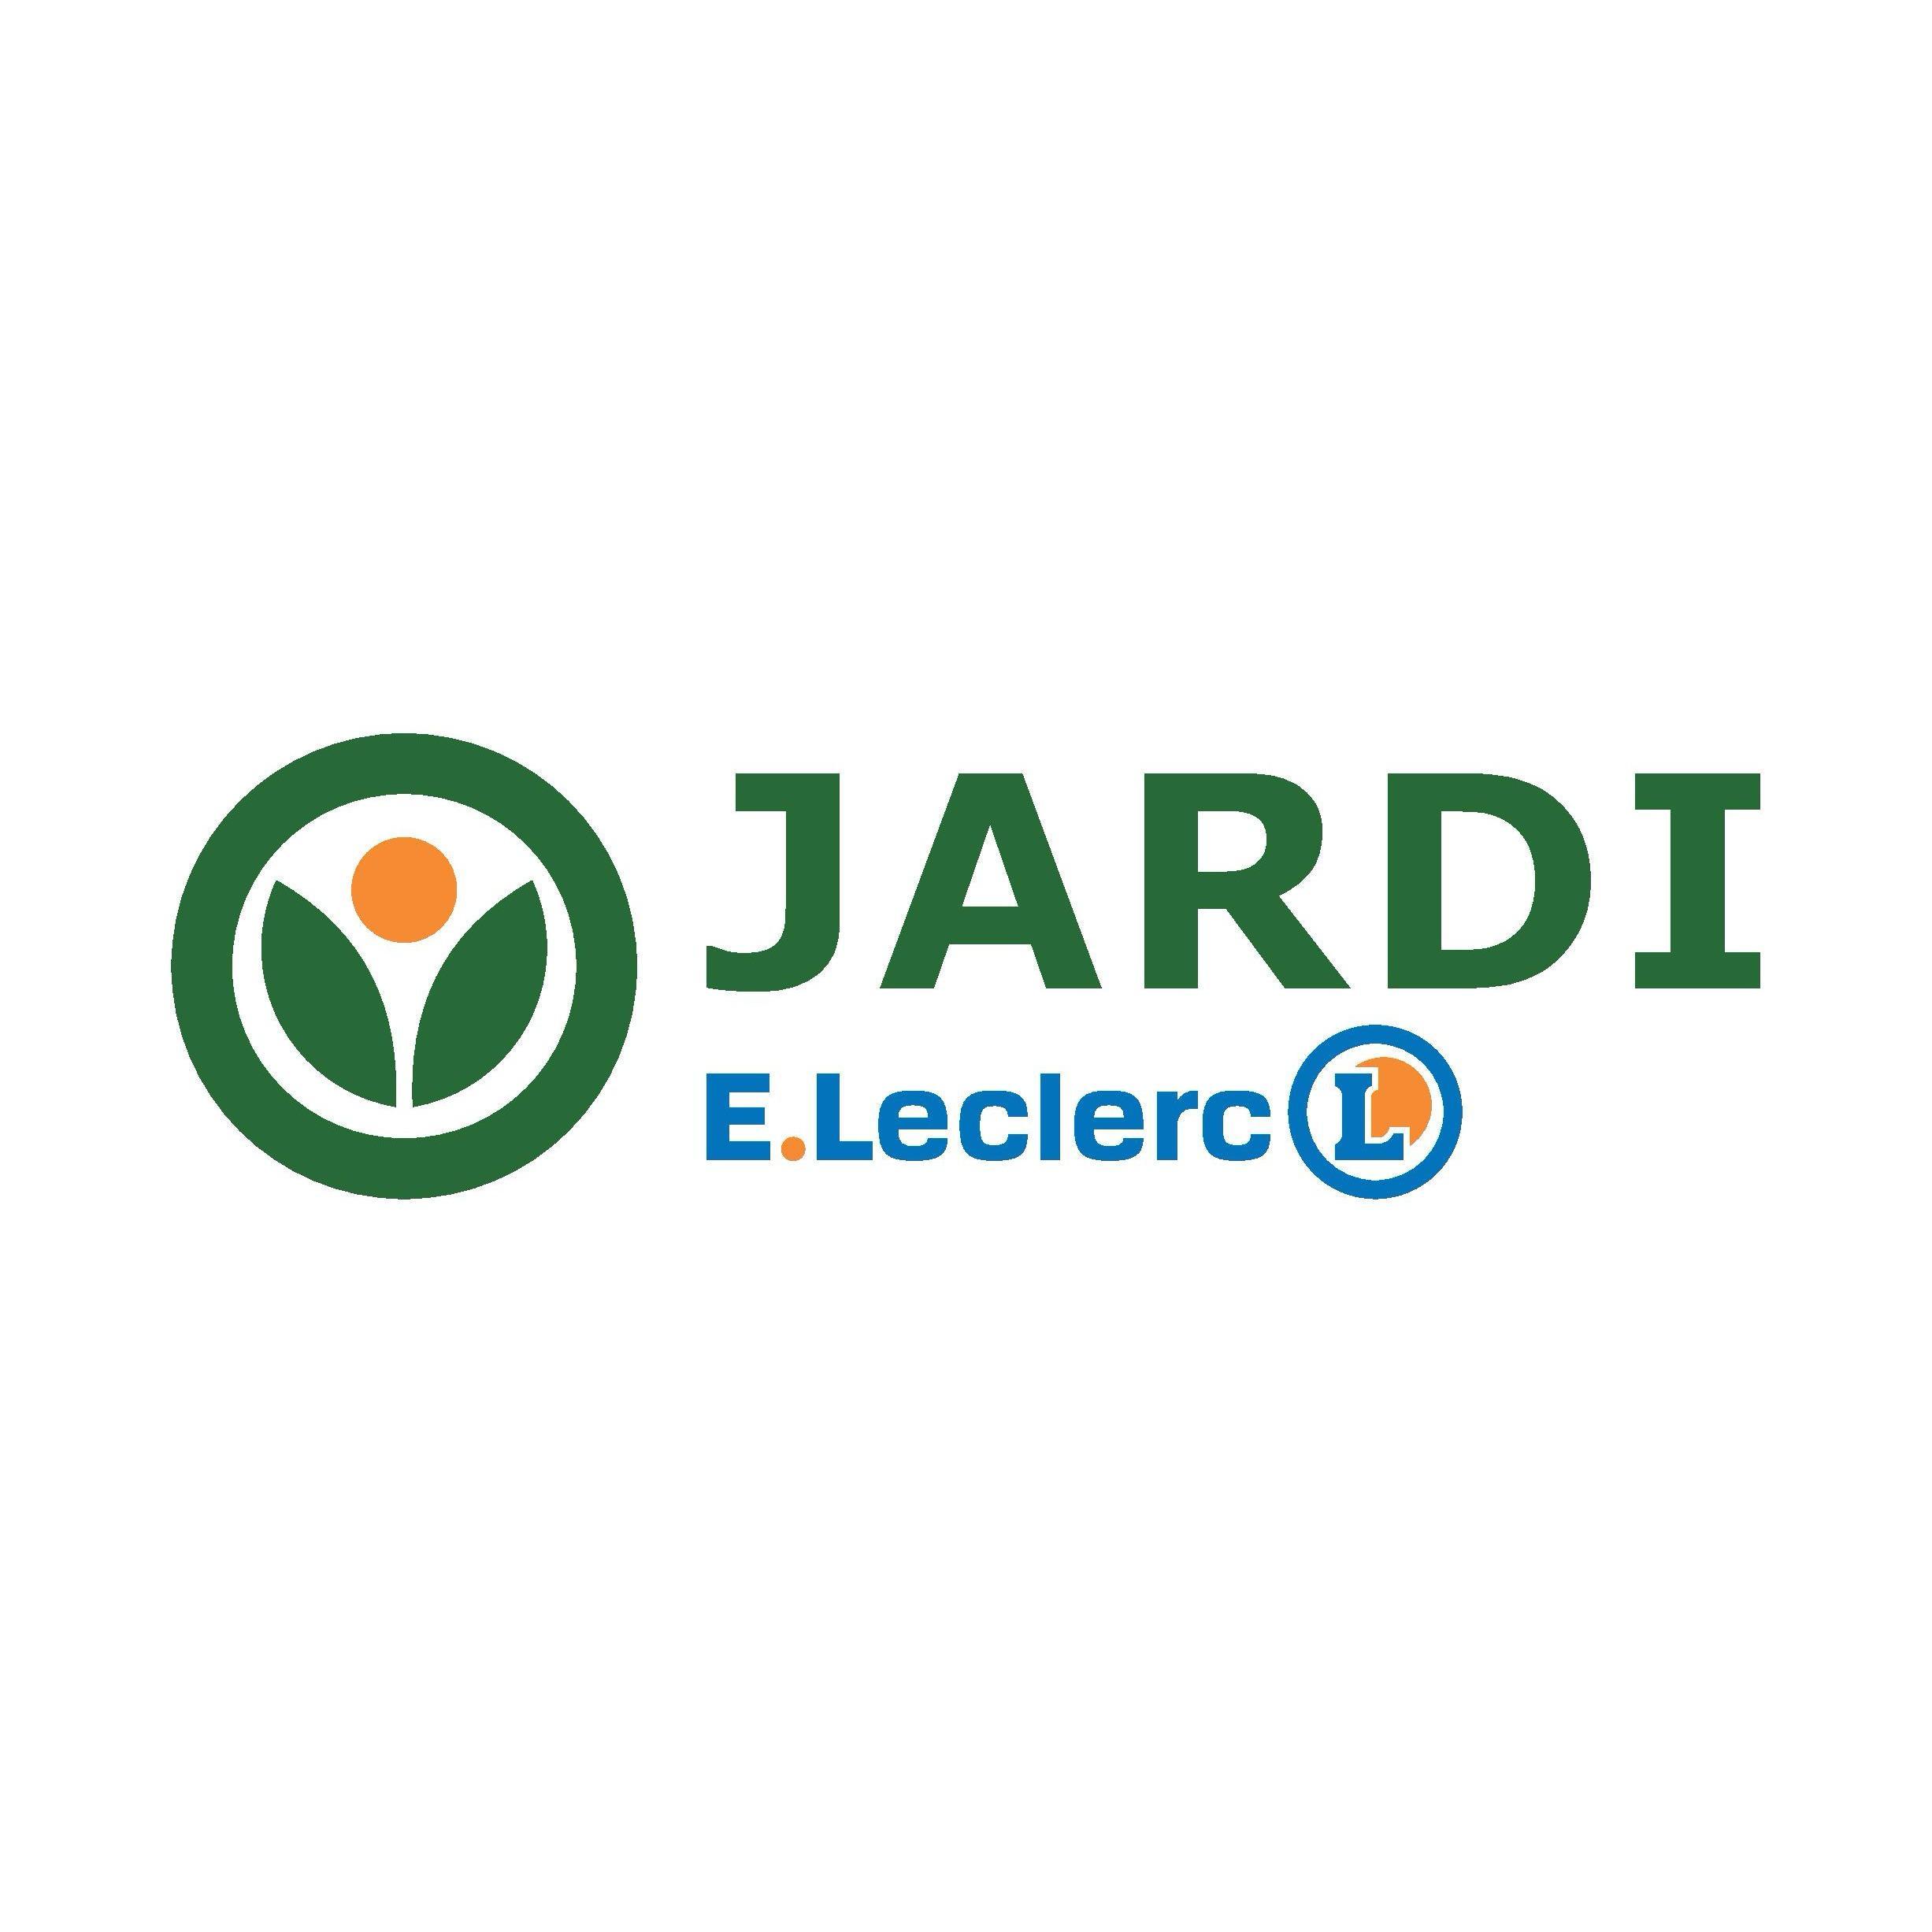 E.leclerc Jardi Le Luc